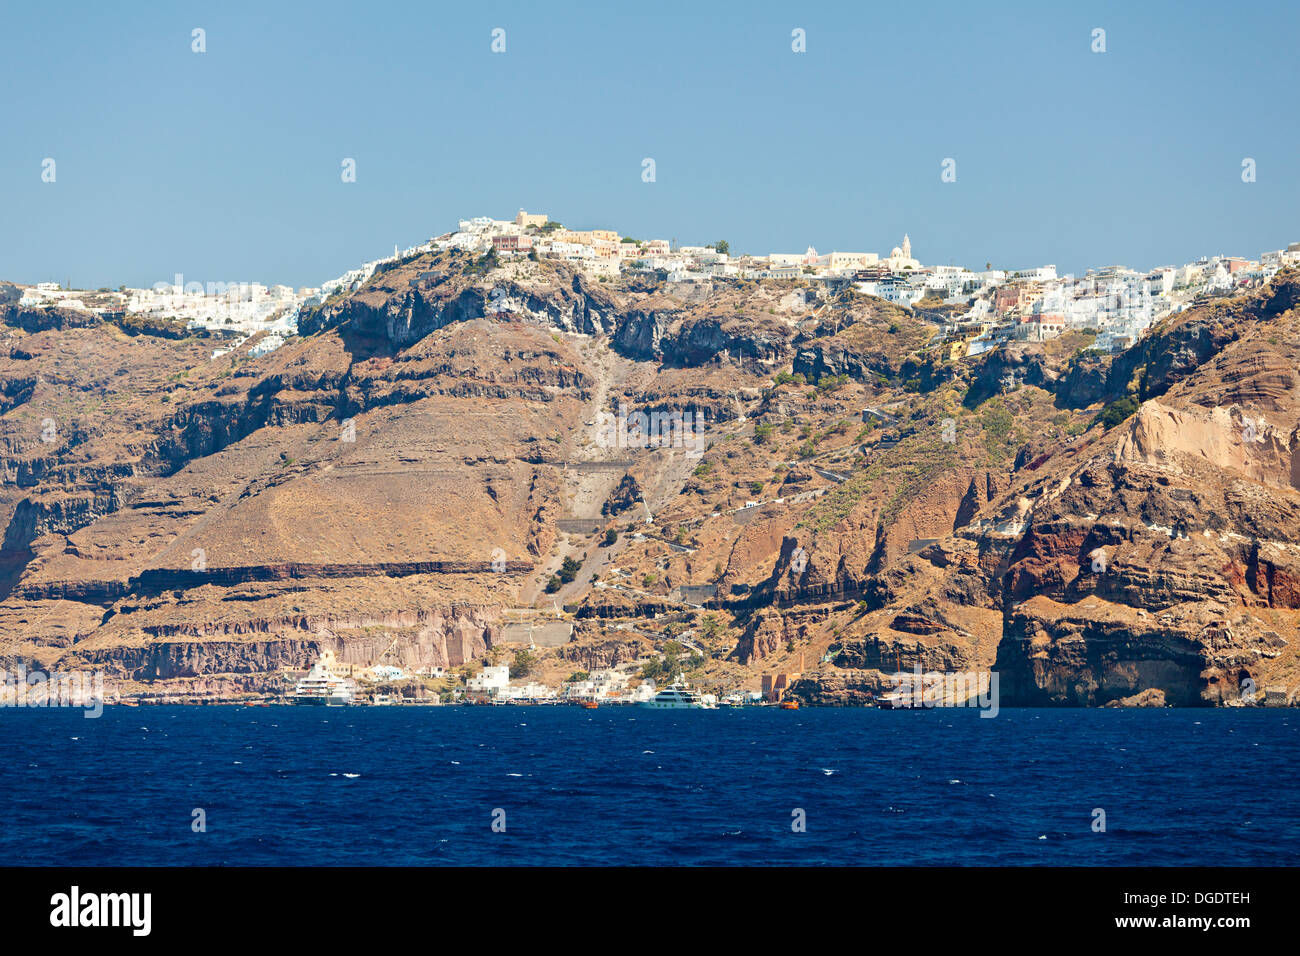 Fira la capitale de Santorin, Grèce vu du niveau de la mer. Banque D'Images